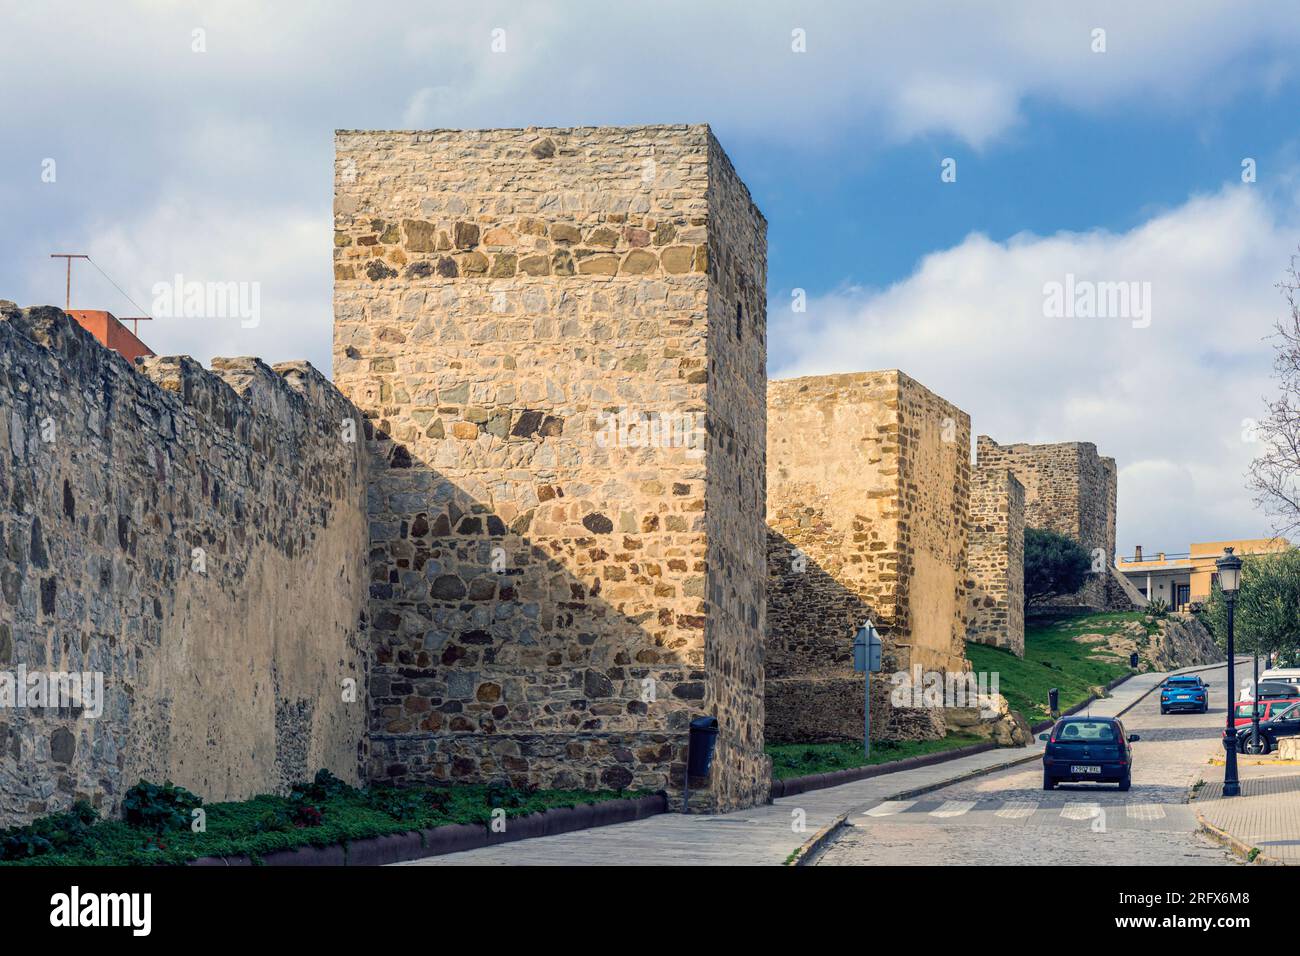 Tarifa, Costa de la Luz, province de Cadix, Espagne. Murs et tours médiévaux de la ville. Banque D'Images